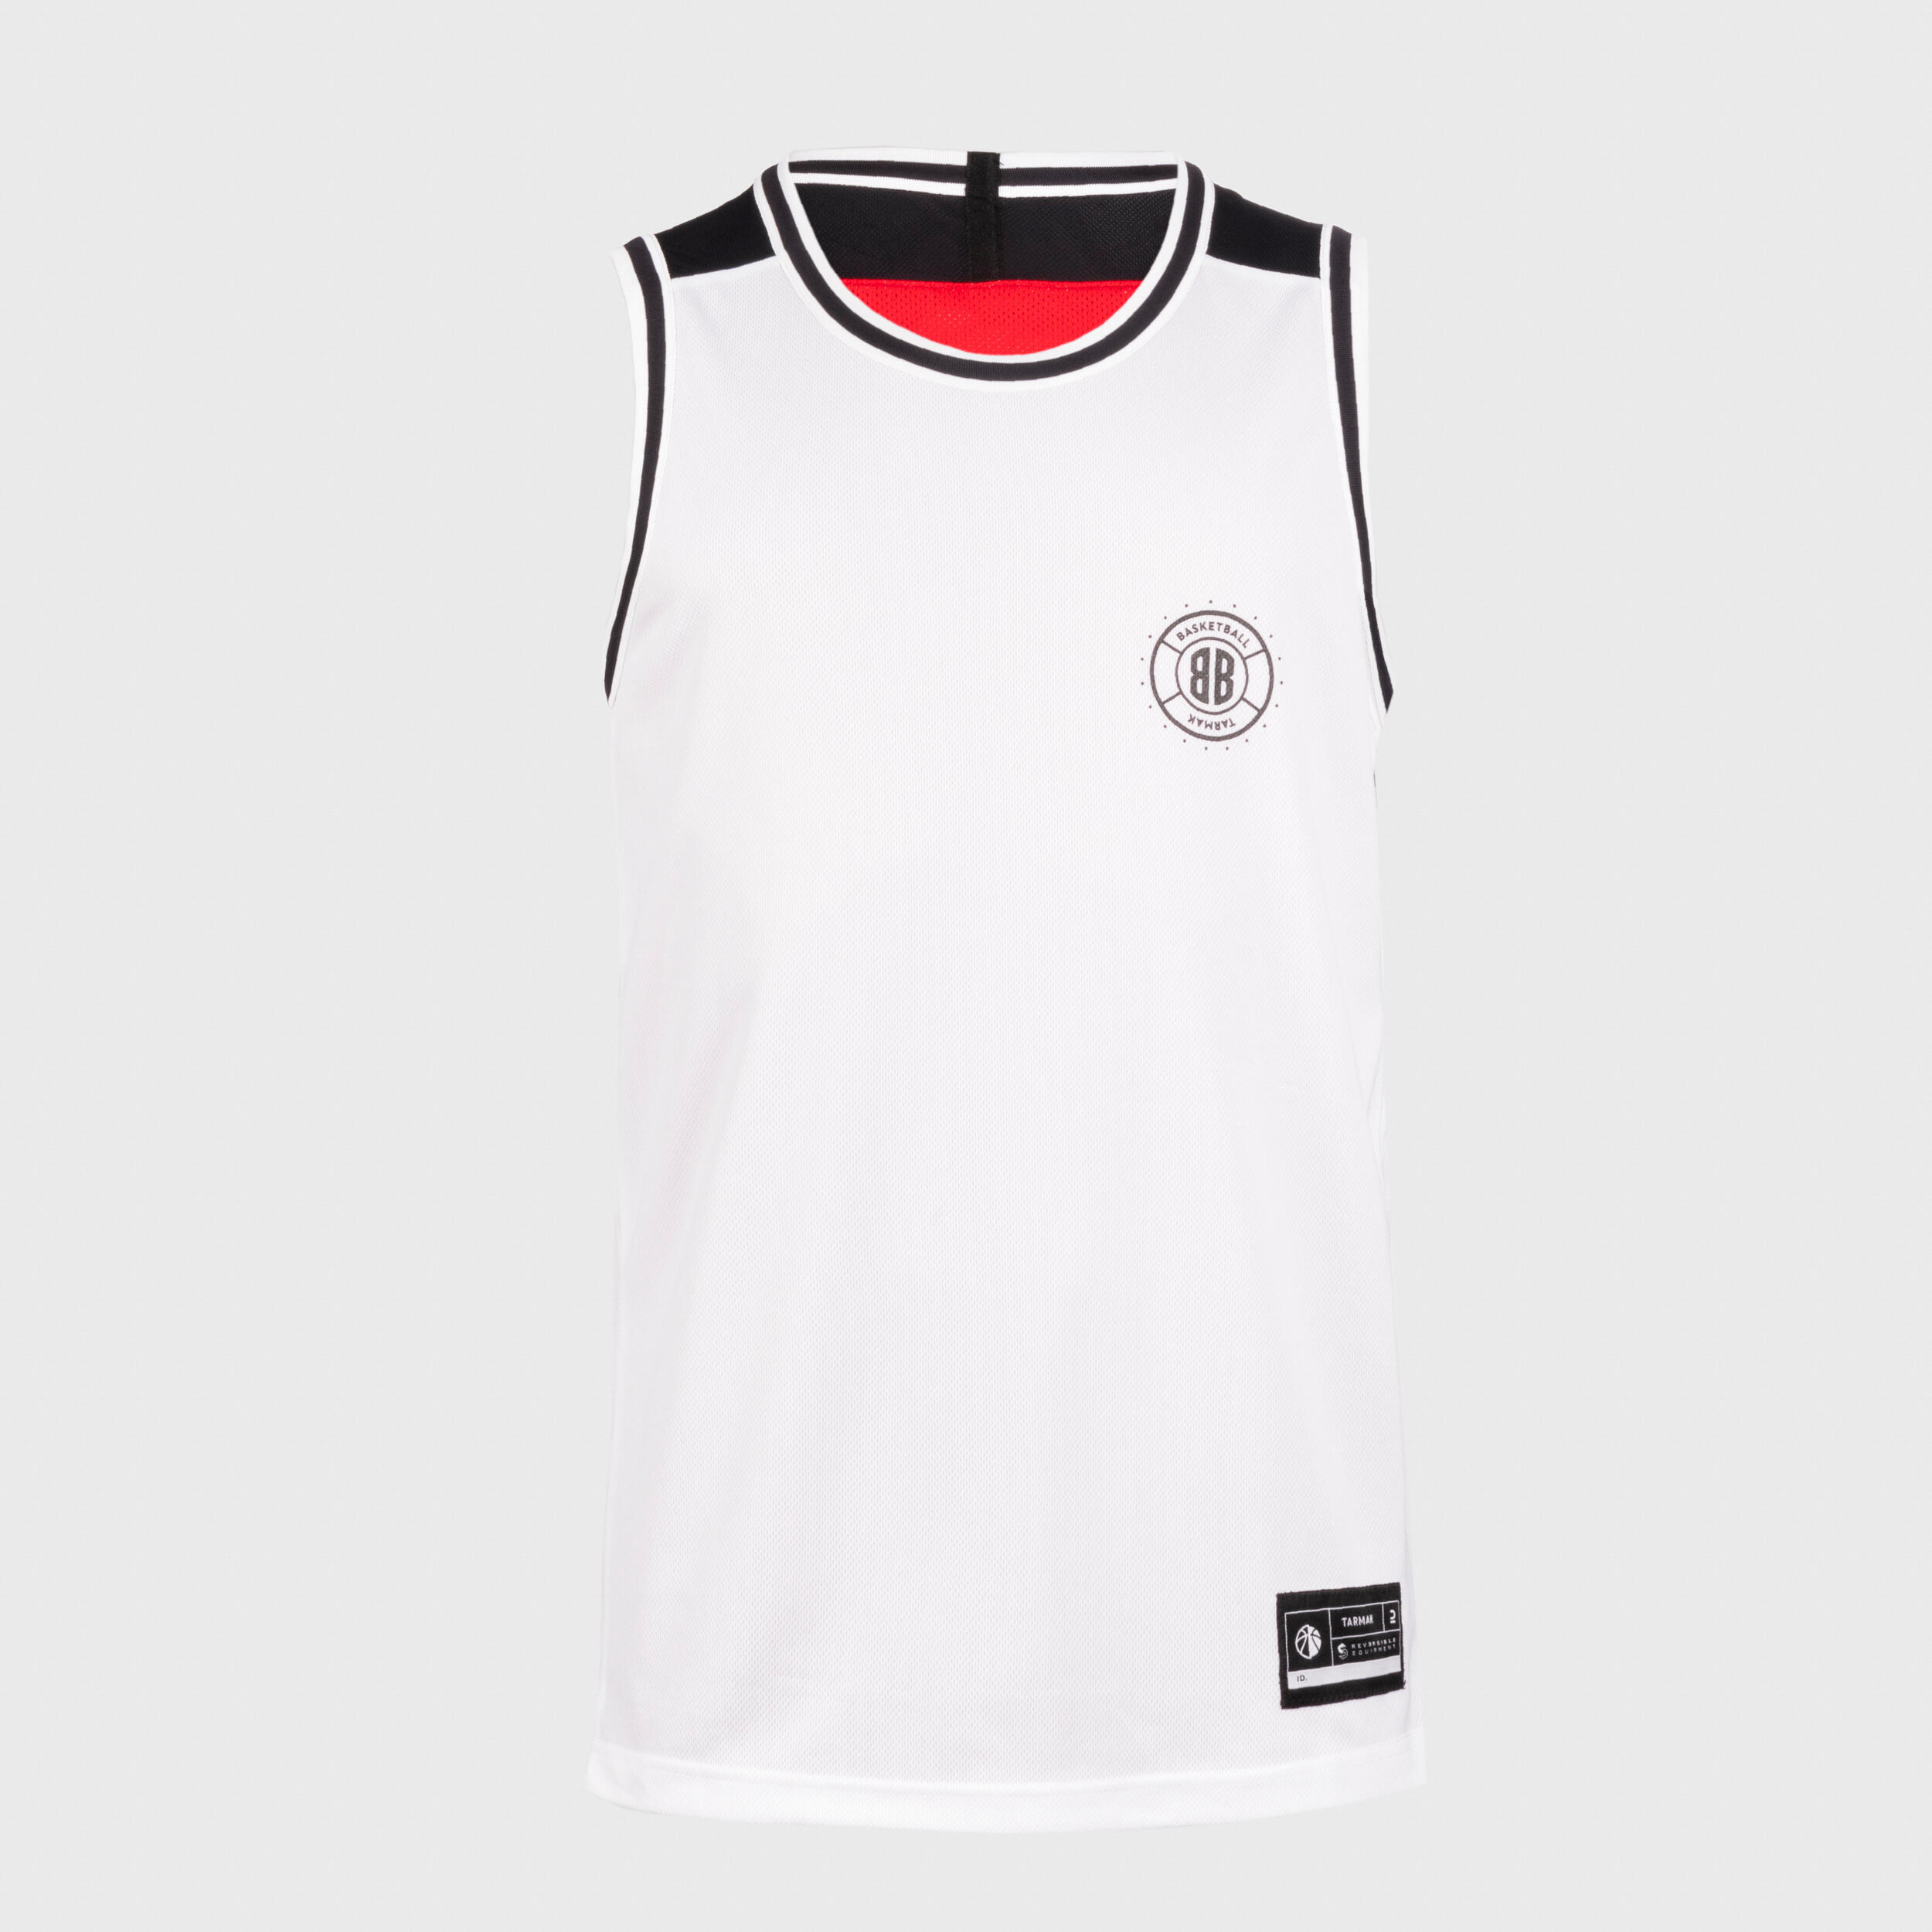 Men's/Women's Reversible Sleeveless Basketball Jersey T500 - White/Red 5/14